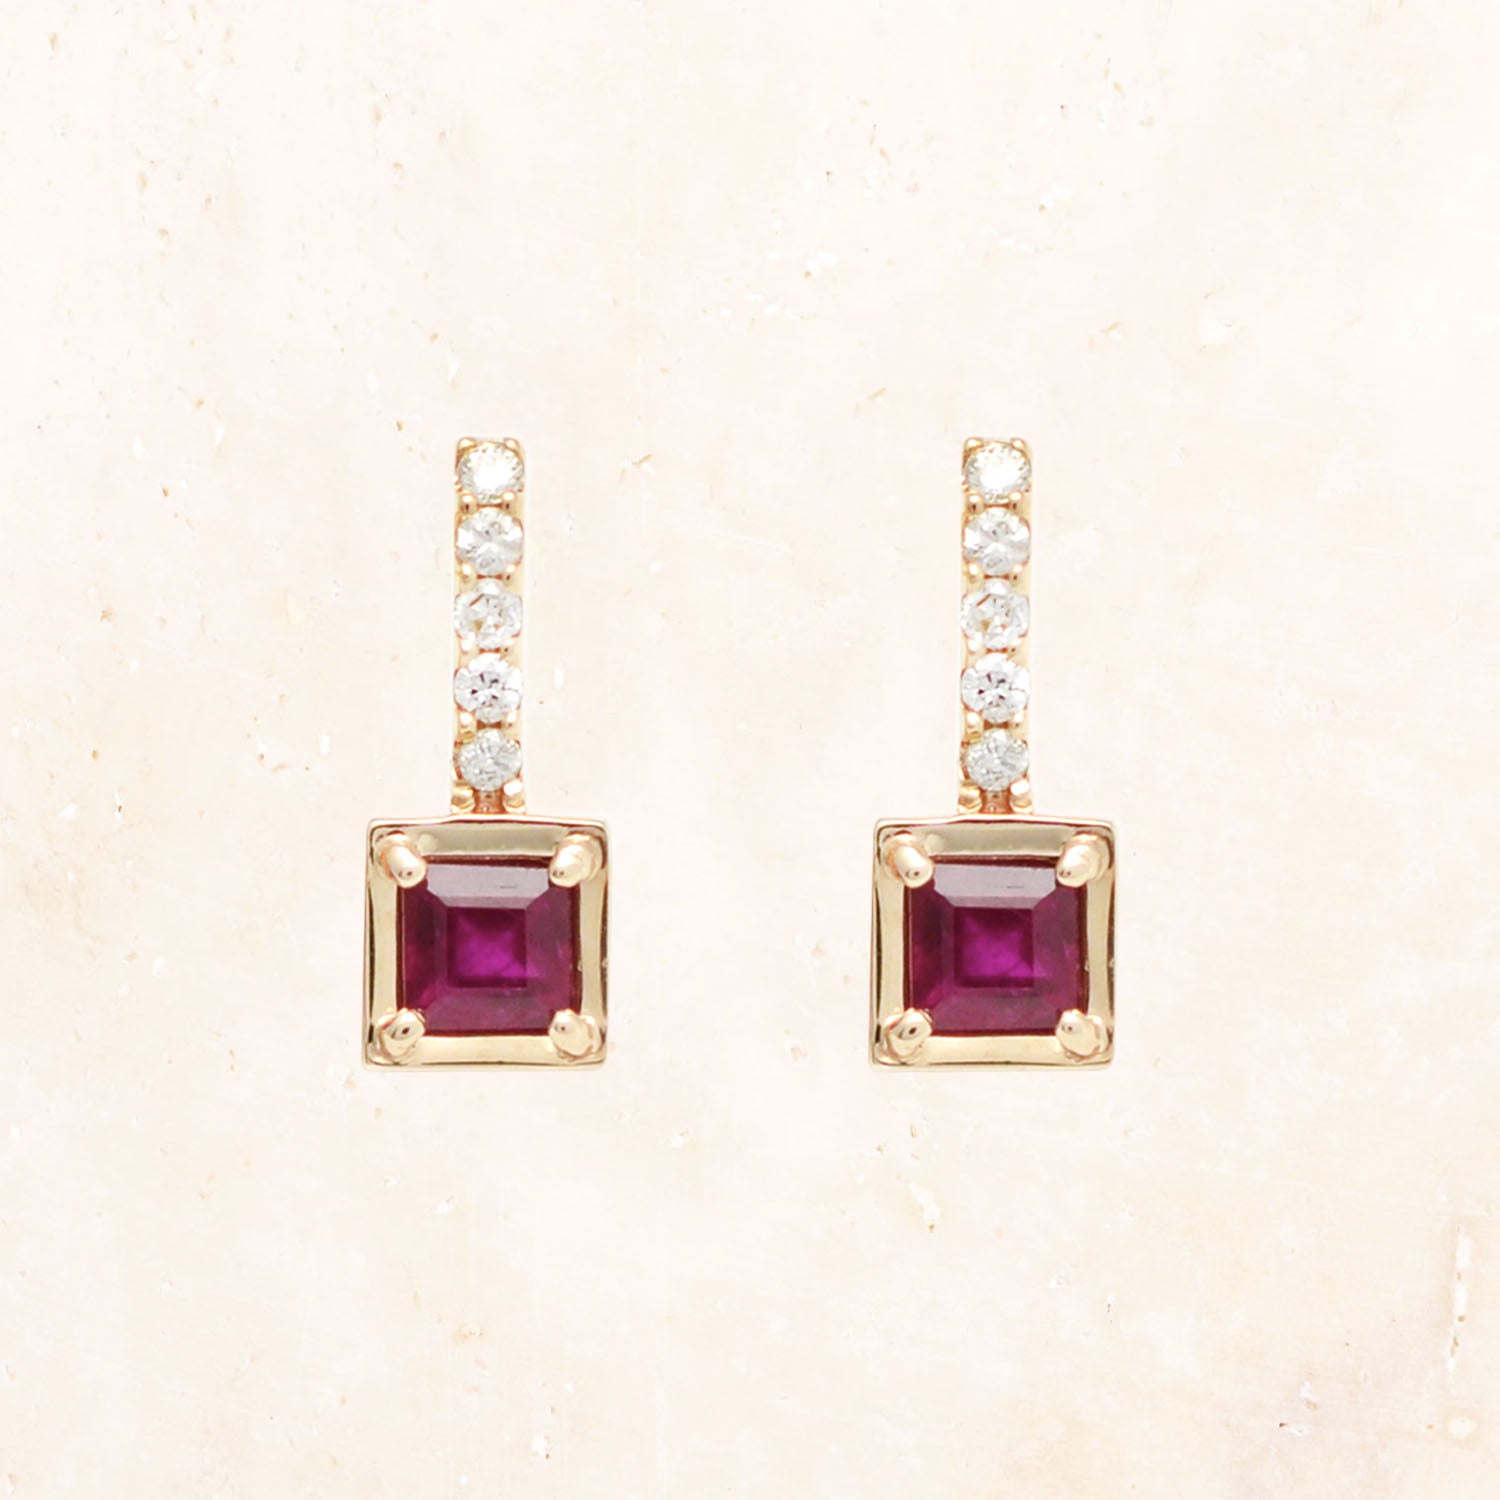 10K Gold Candy Comet Ruby Earrings